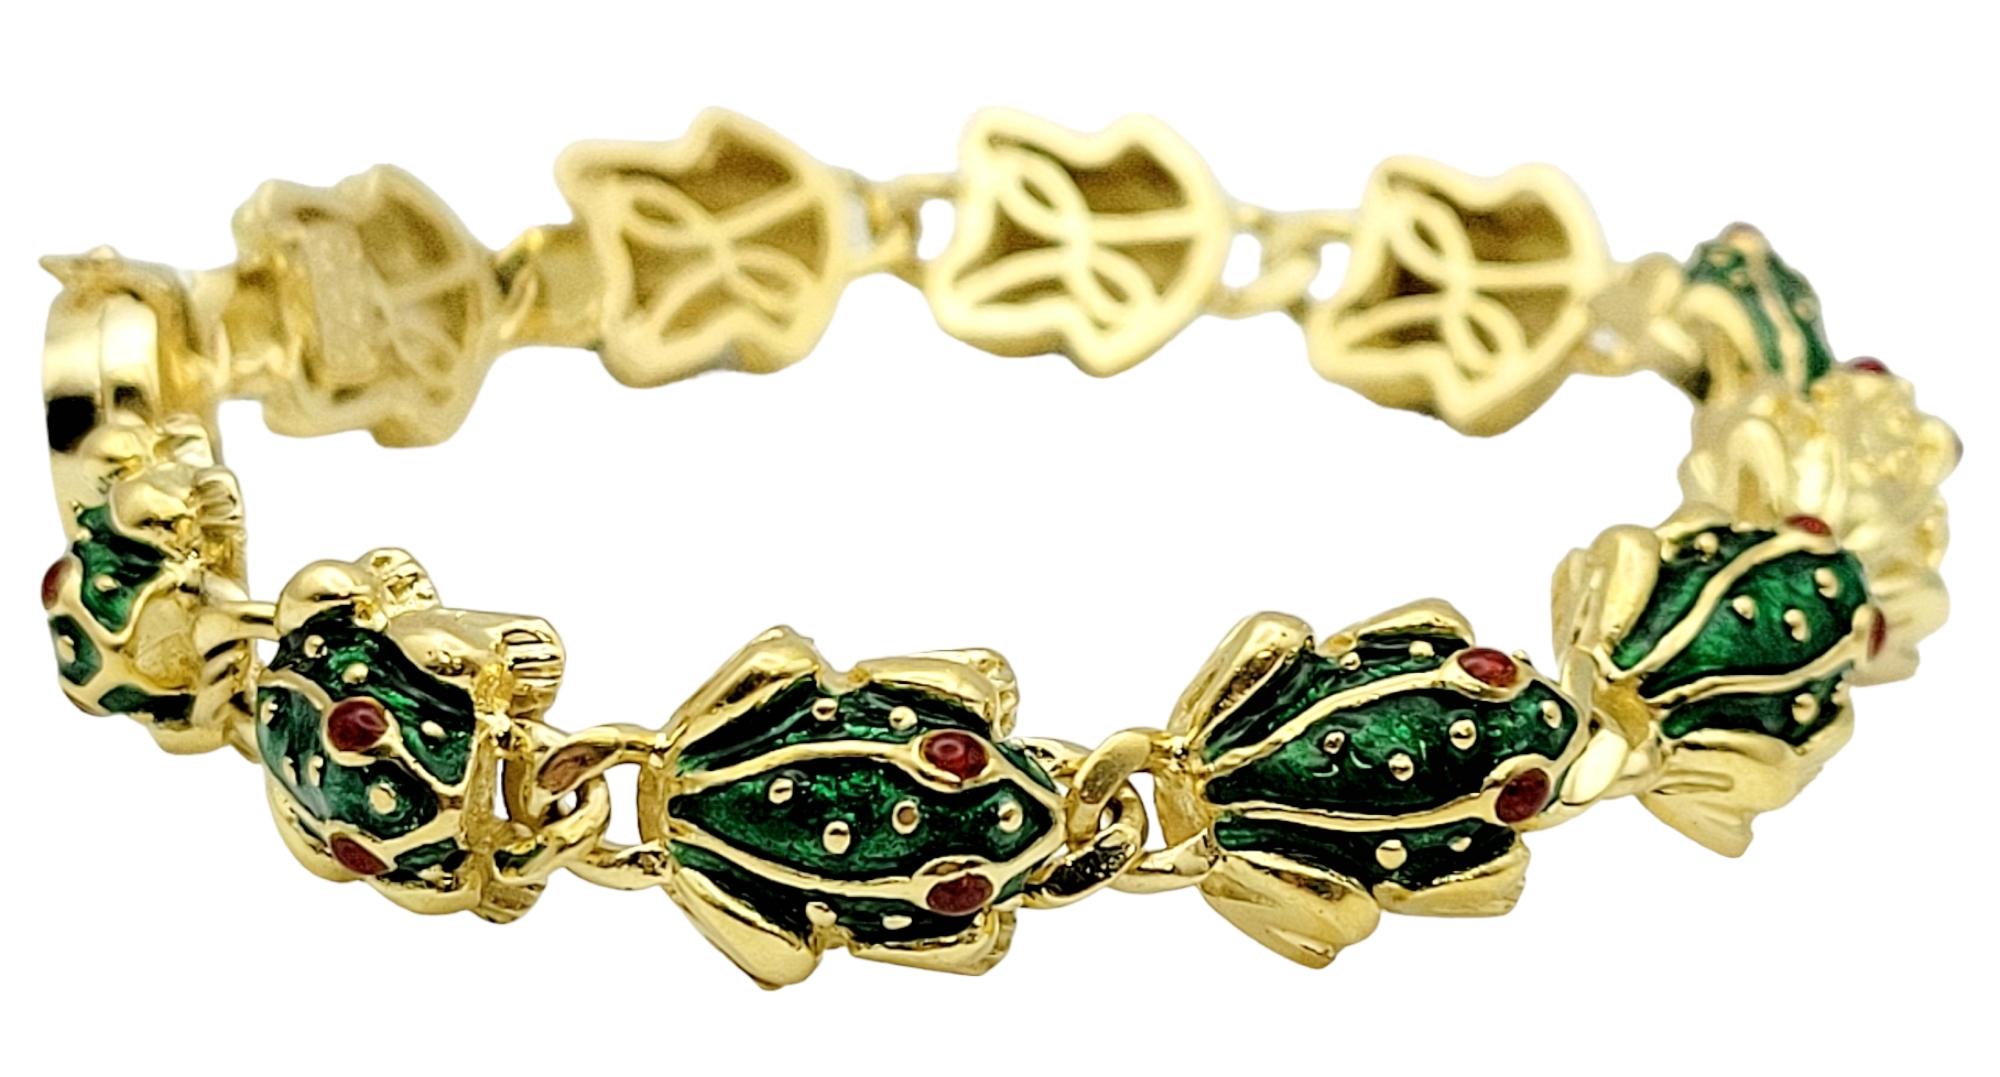 Cet incroyable bracelet moderne à maillons en or en forme de grenouille est une création authentique d'Hidalgo ! Ce magnifique bracelet présente des maillons de grenouilles en 3D avec des accents d'émail vert et rouge. Il y a 11 maillons grenouille,